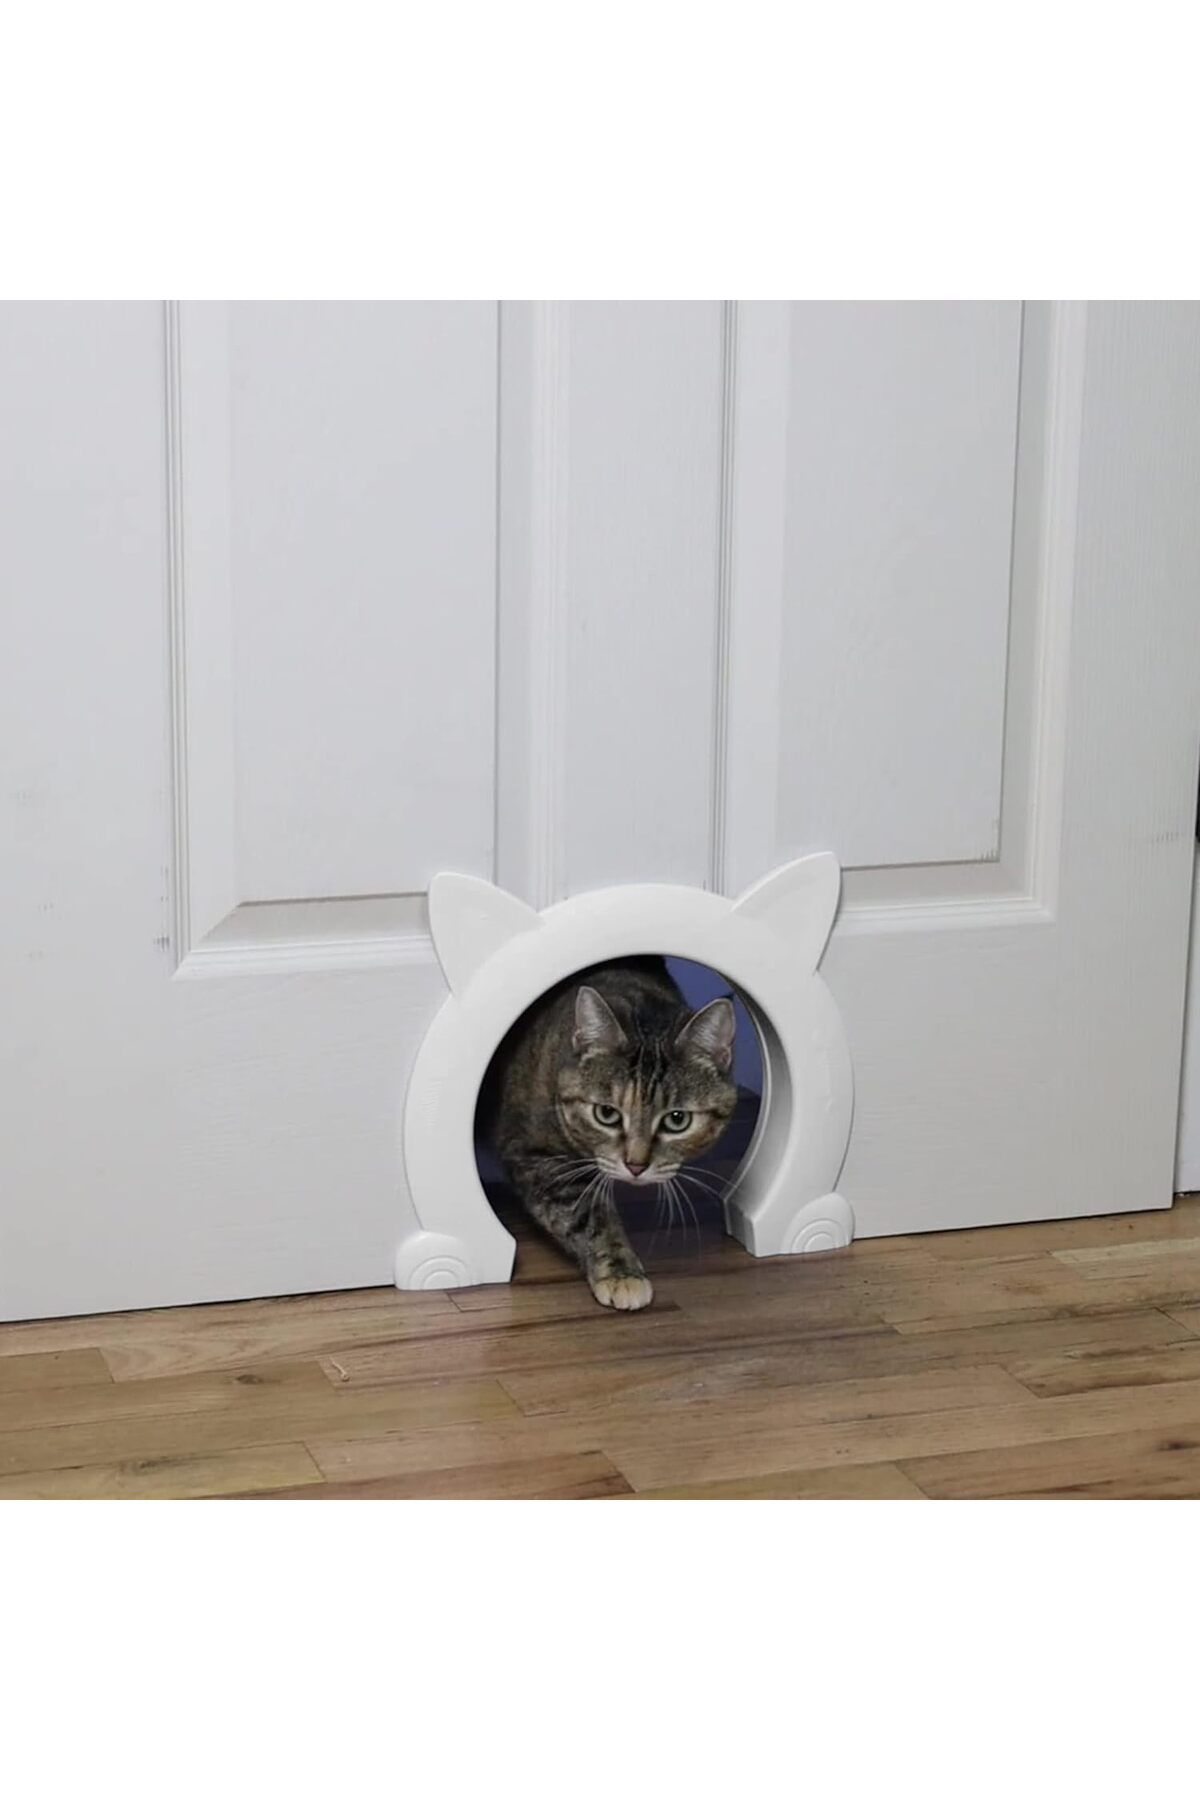 IKUSO Kedi Kapı İç Kapı, 10 kg'a kadar Kediler için Kedi Kapısı Kedi Kapağı, Oda Kapıları için Kedi Tüneli